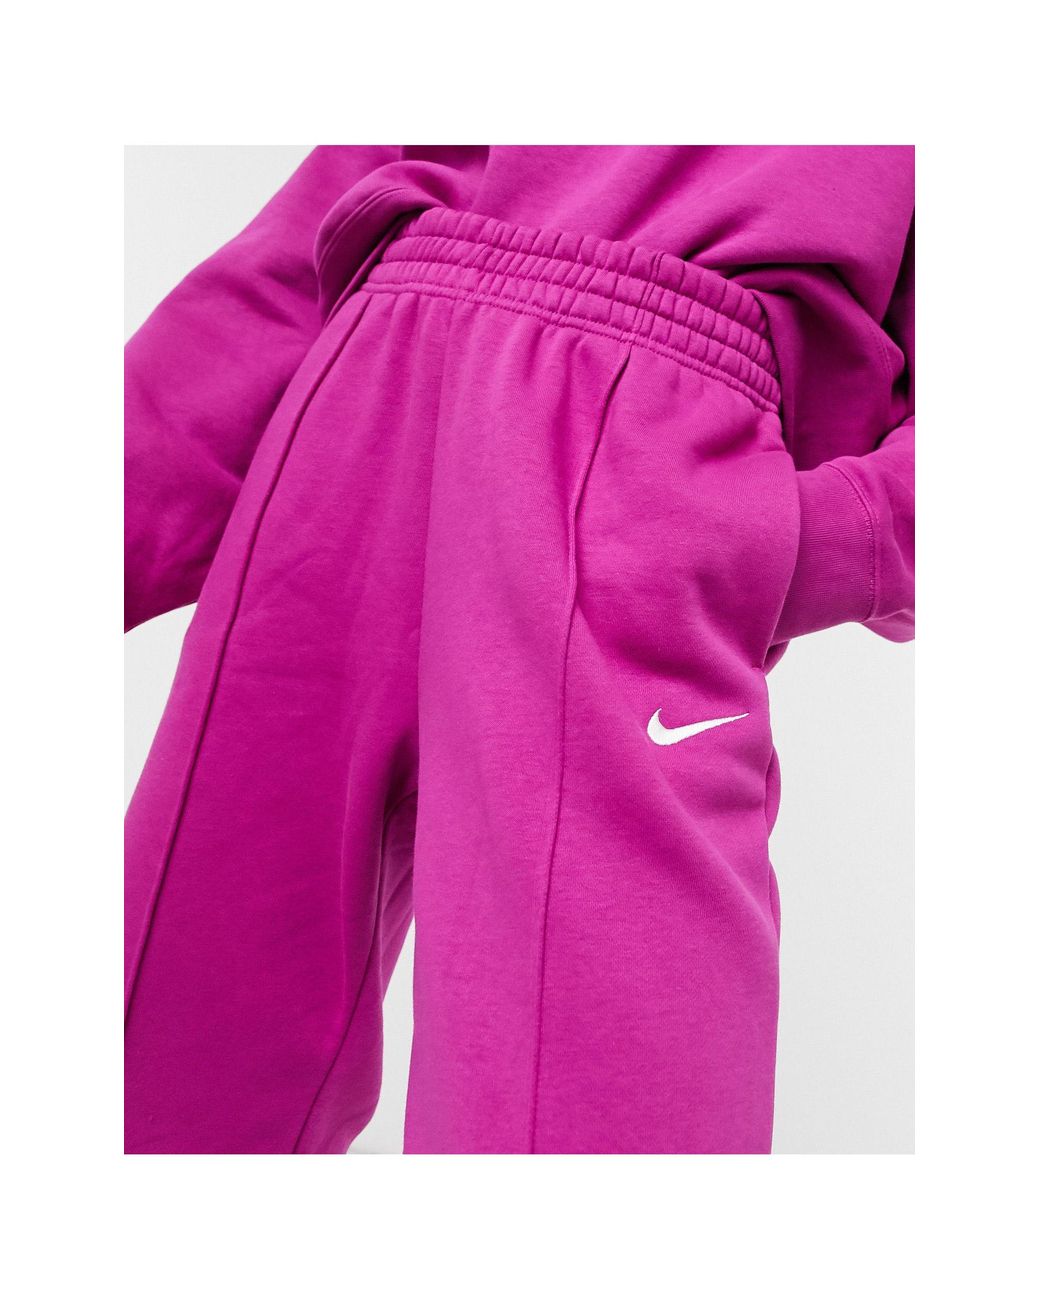 Nike - Pantalon de jogging oversize à taille haute et petit logo virgule -  Marron chanvre